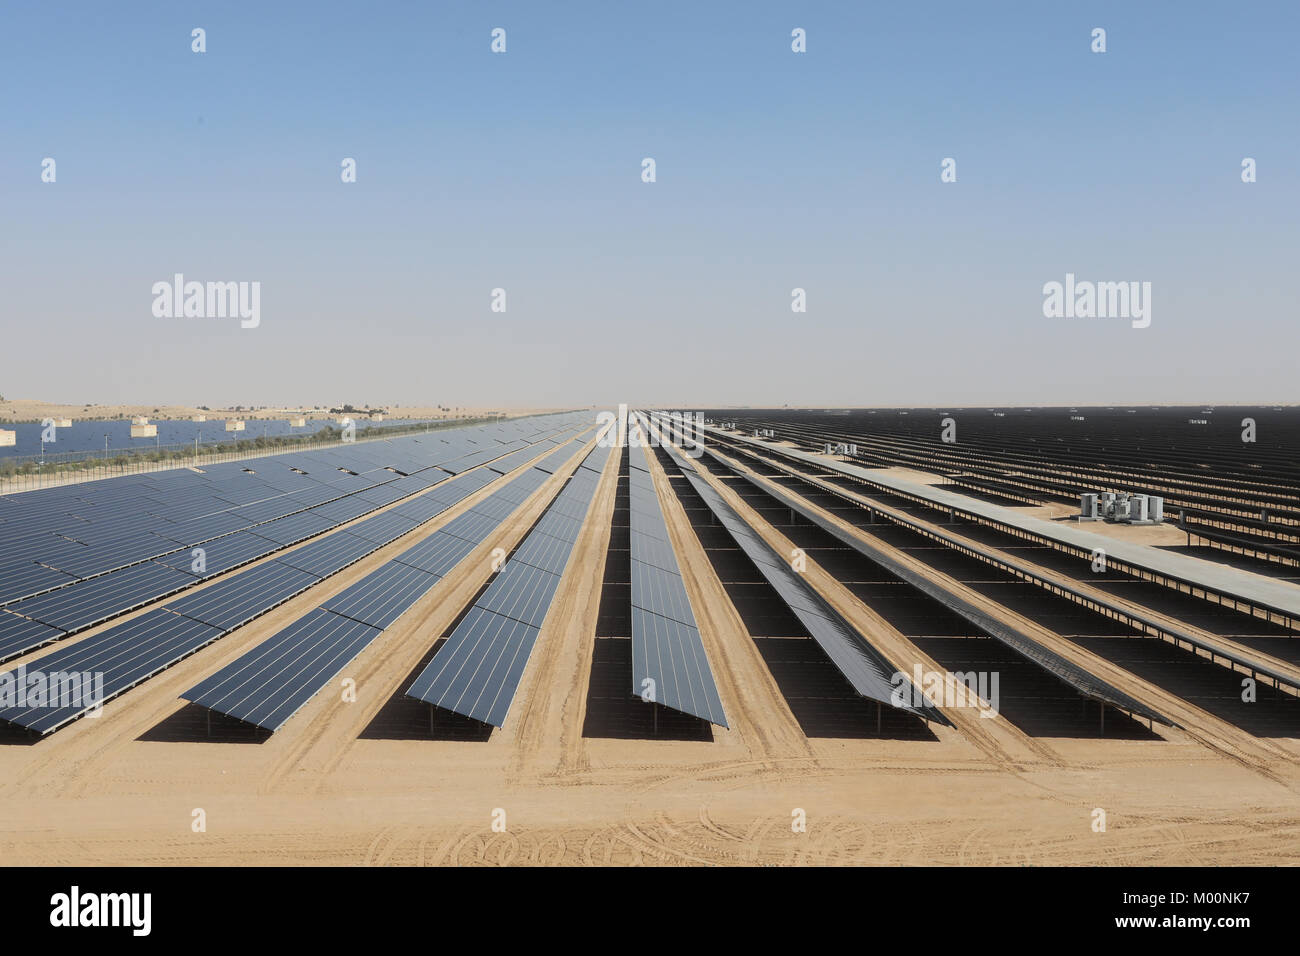 Dubaï, Émirats arabes unis, le 17 janvier 2018. Un champ de panneaux solaires photovoltaïques qui fait partie de la Fondation Mohammed bin Rashid parc solaire à Dubaï, Émirats arabes unis, le 17 janvier 2018. Credit : Dominic Dudley/Alamy Live News Banque D'Images